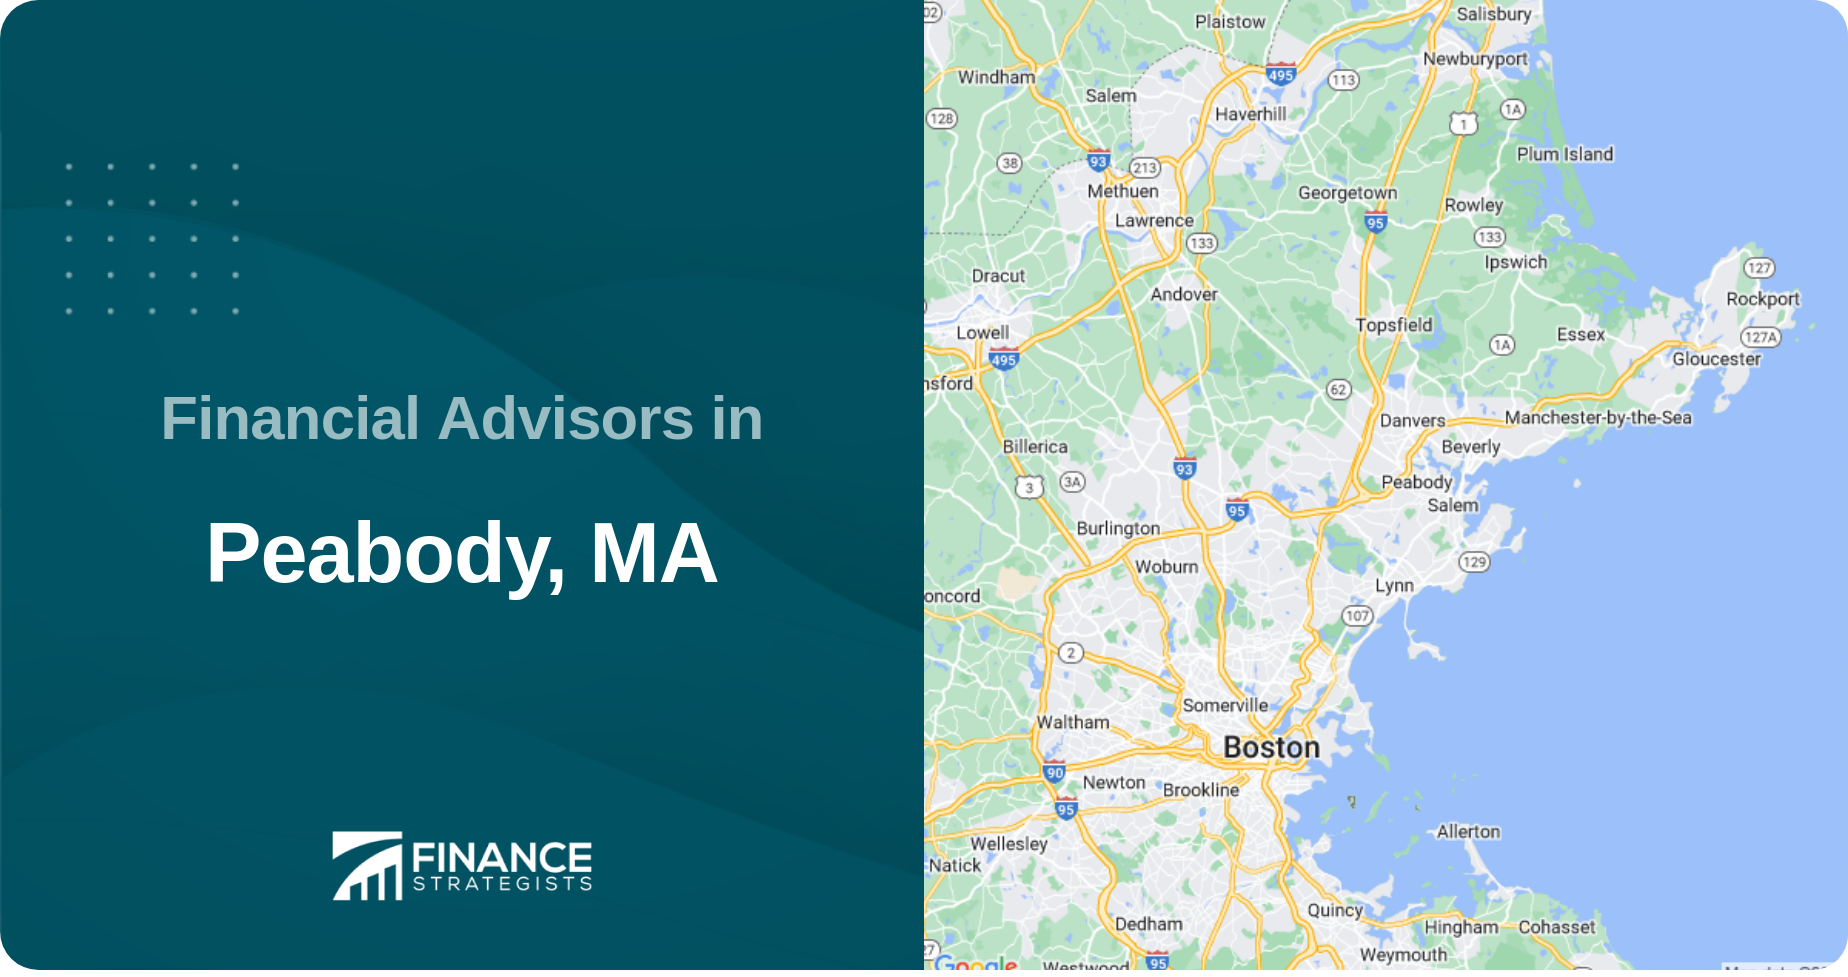 Financial Advisors in Peabody, MA